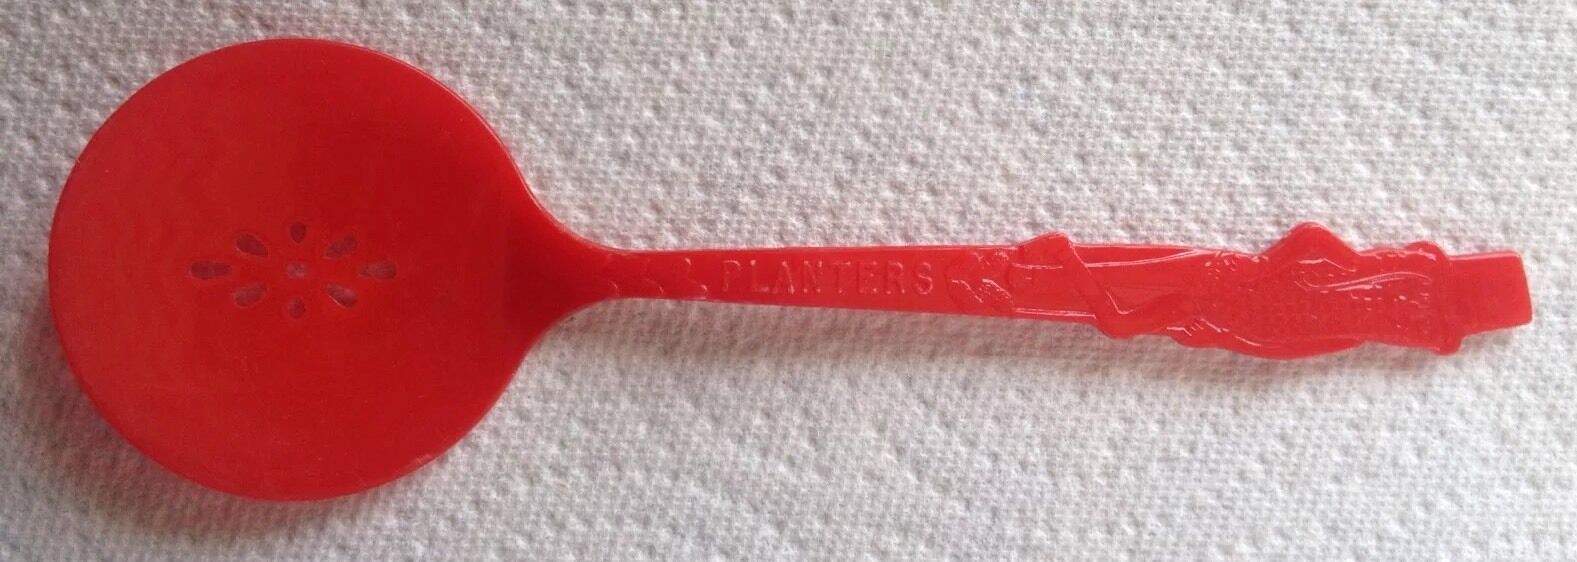 Rare PLANTERS Mr. Peanut Plastic Slotted Spoon/Red/Vintage Mid-Century/5.75\